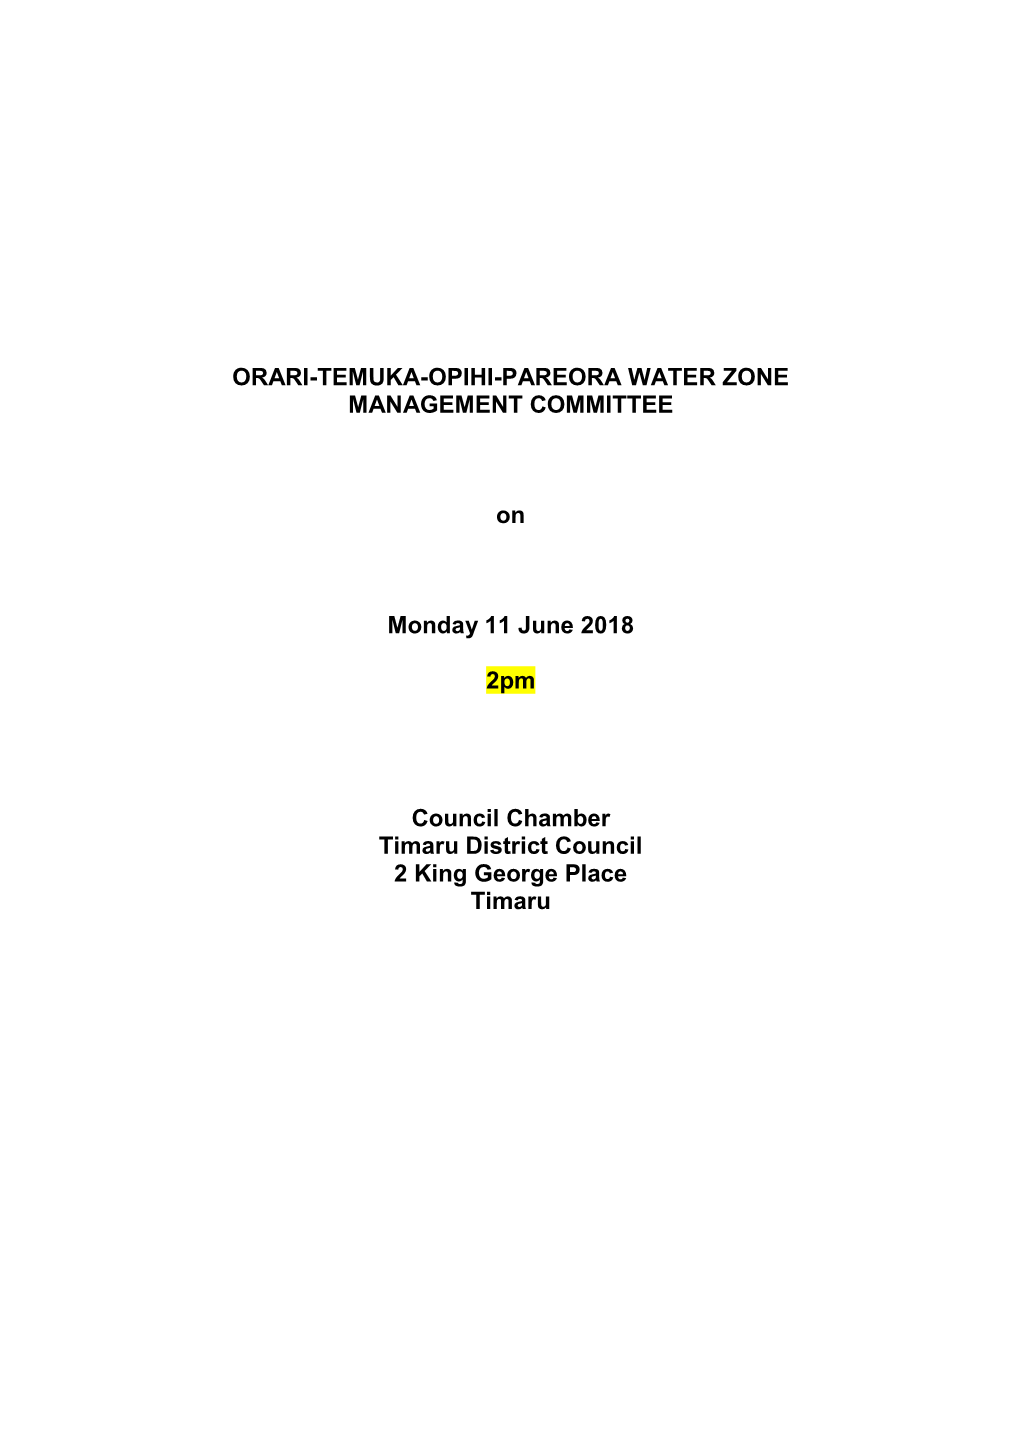 Orari-Temuka-Opihi-Pareora Zone Water Management Committee